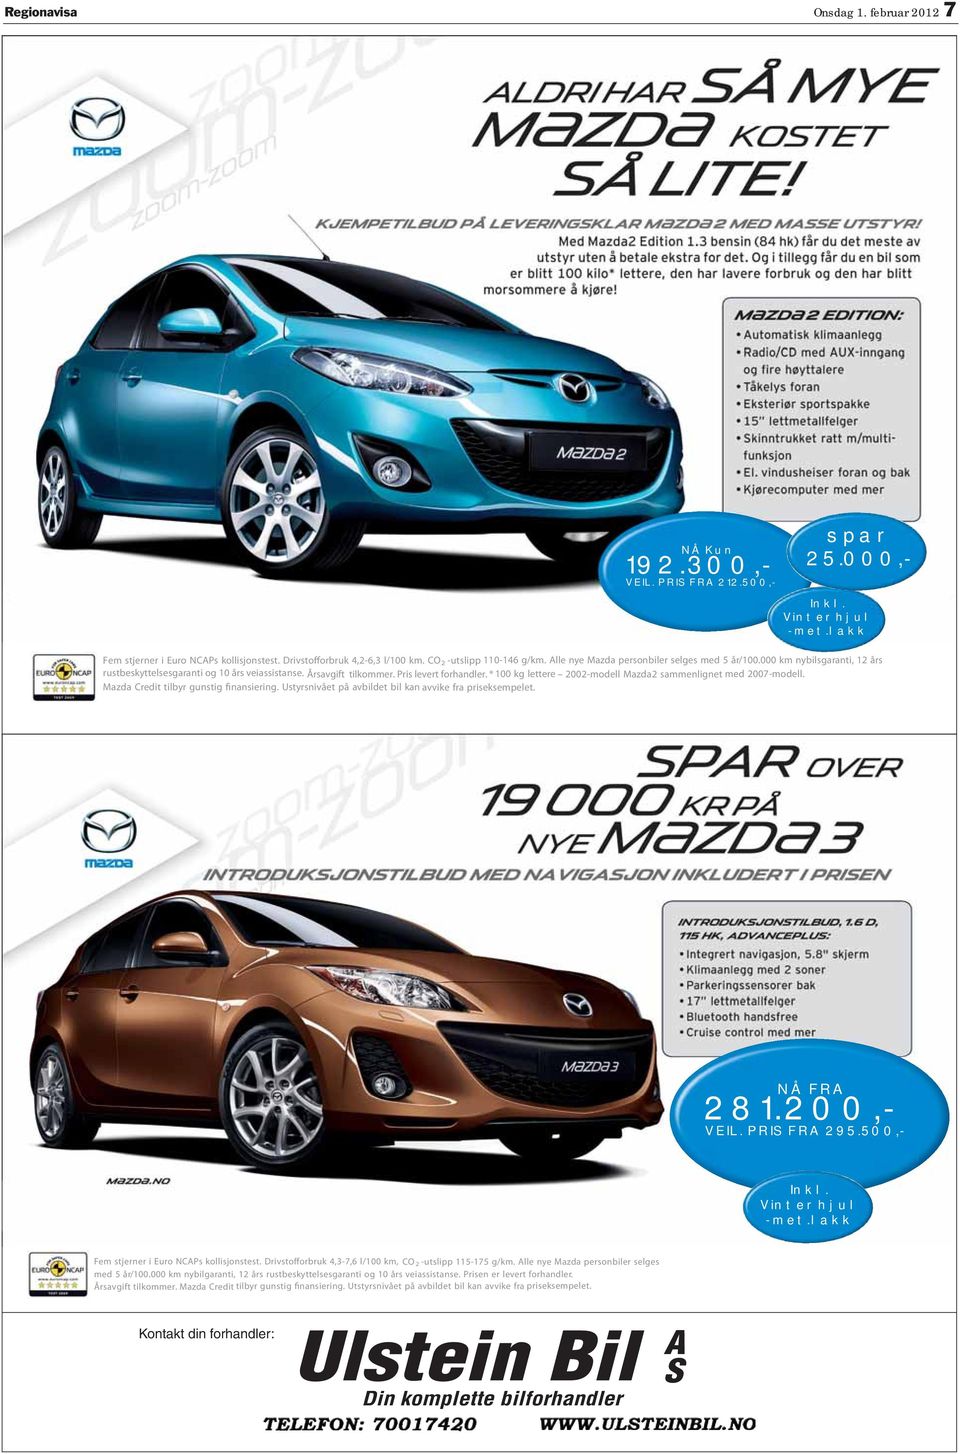 Årsavgift tilkommer. Pris levert forhandler. * 100 kg lettere 2002-modell Mazda2 sammenlignet med 2007-modell. Mazda Credit tilbyr gunstig finansiering.